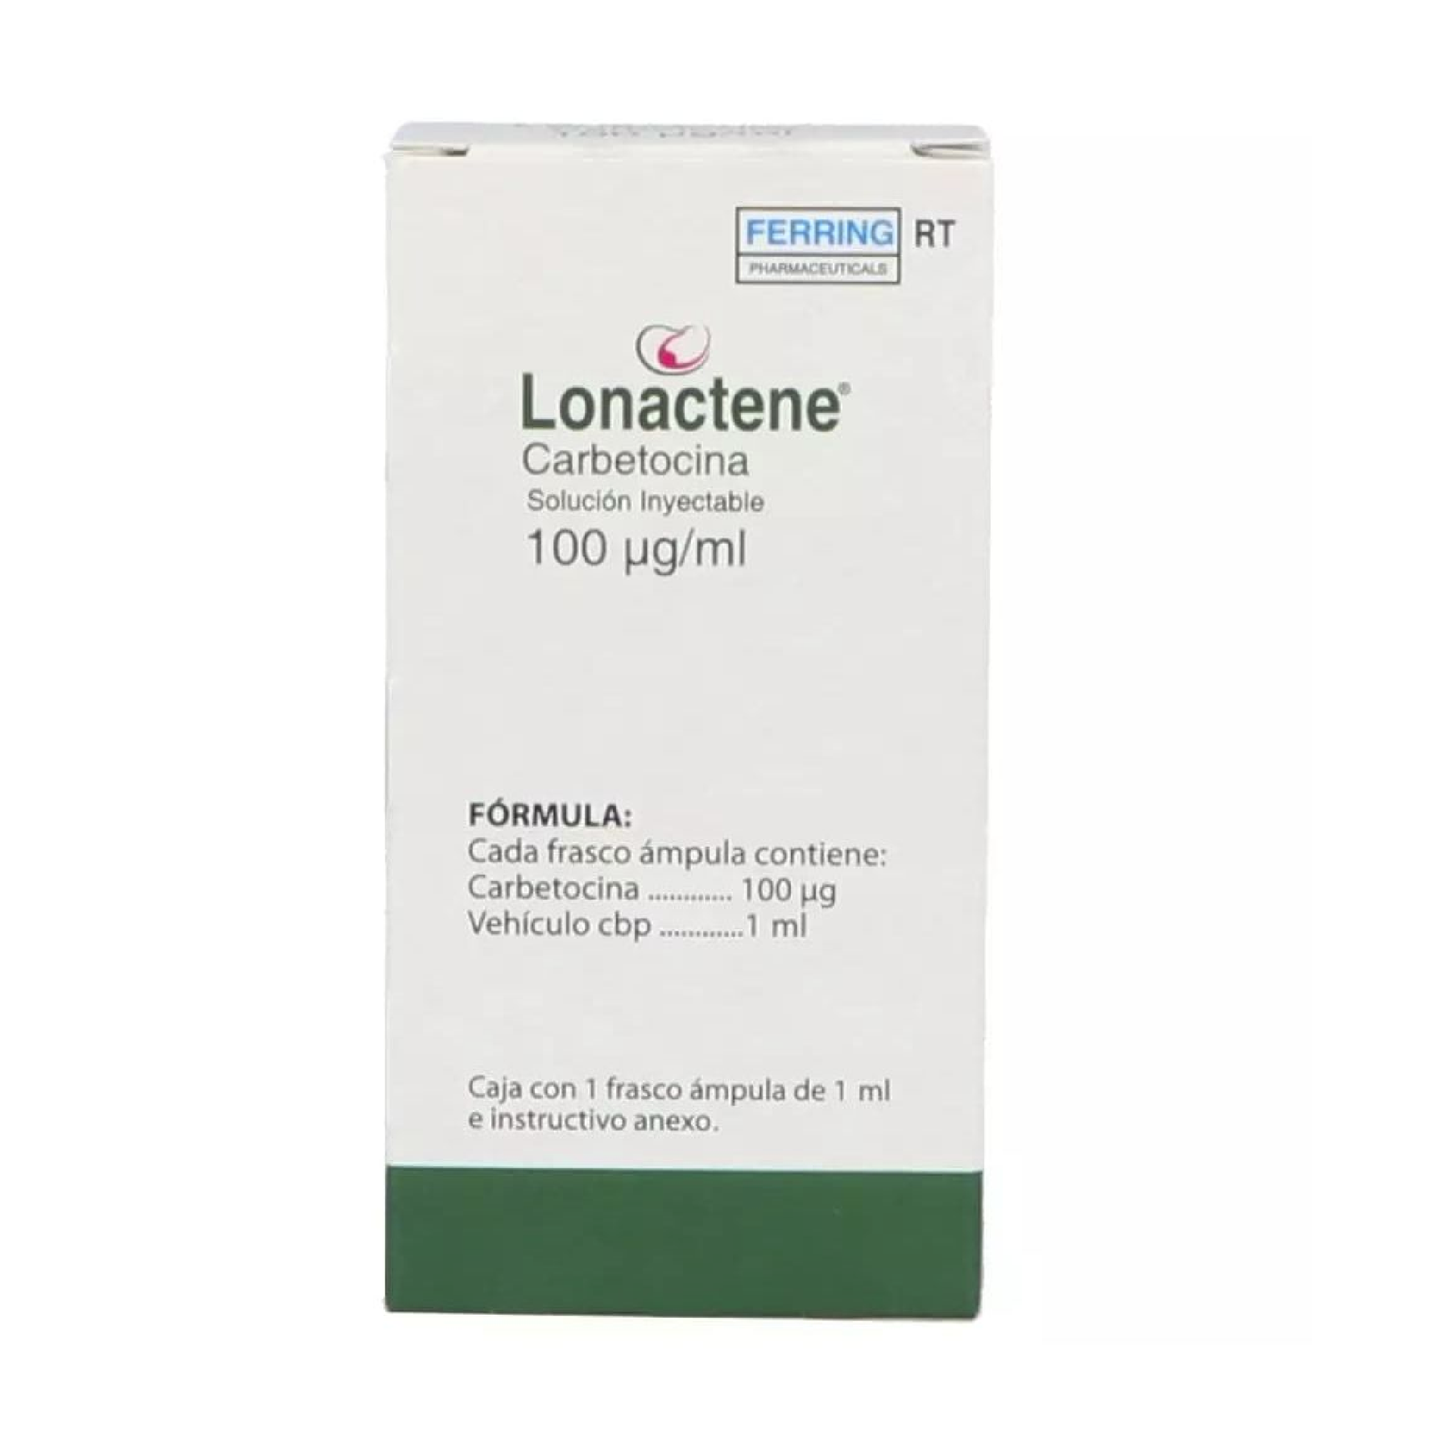 Lonactene RT (Carbetocina) Sol iny 100 mcg/ml Fco amp c/1ml